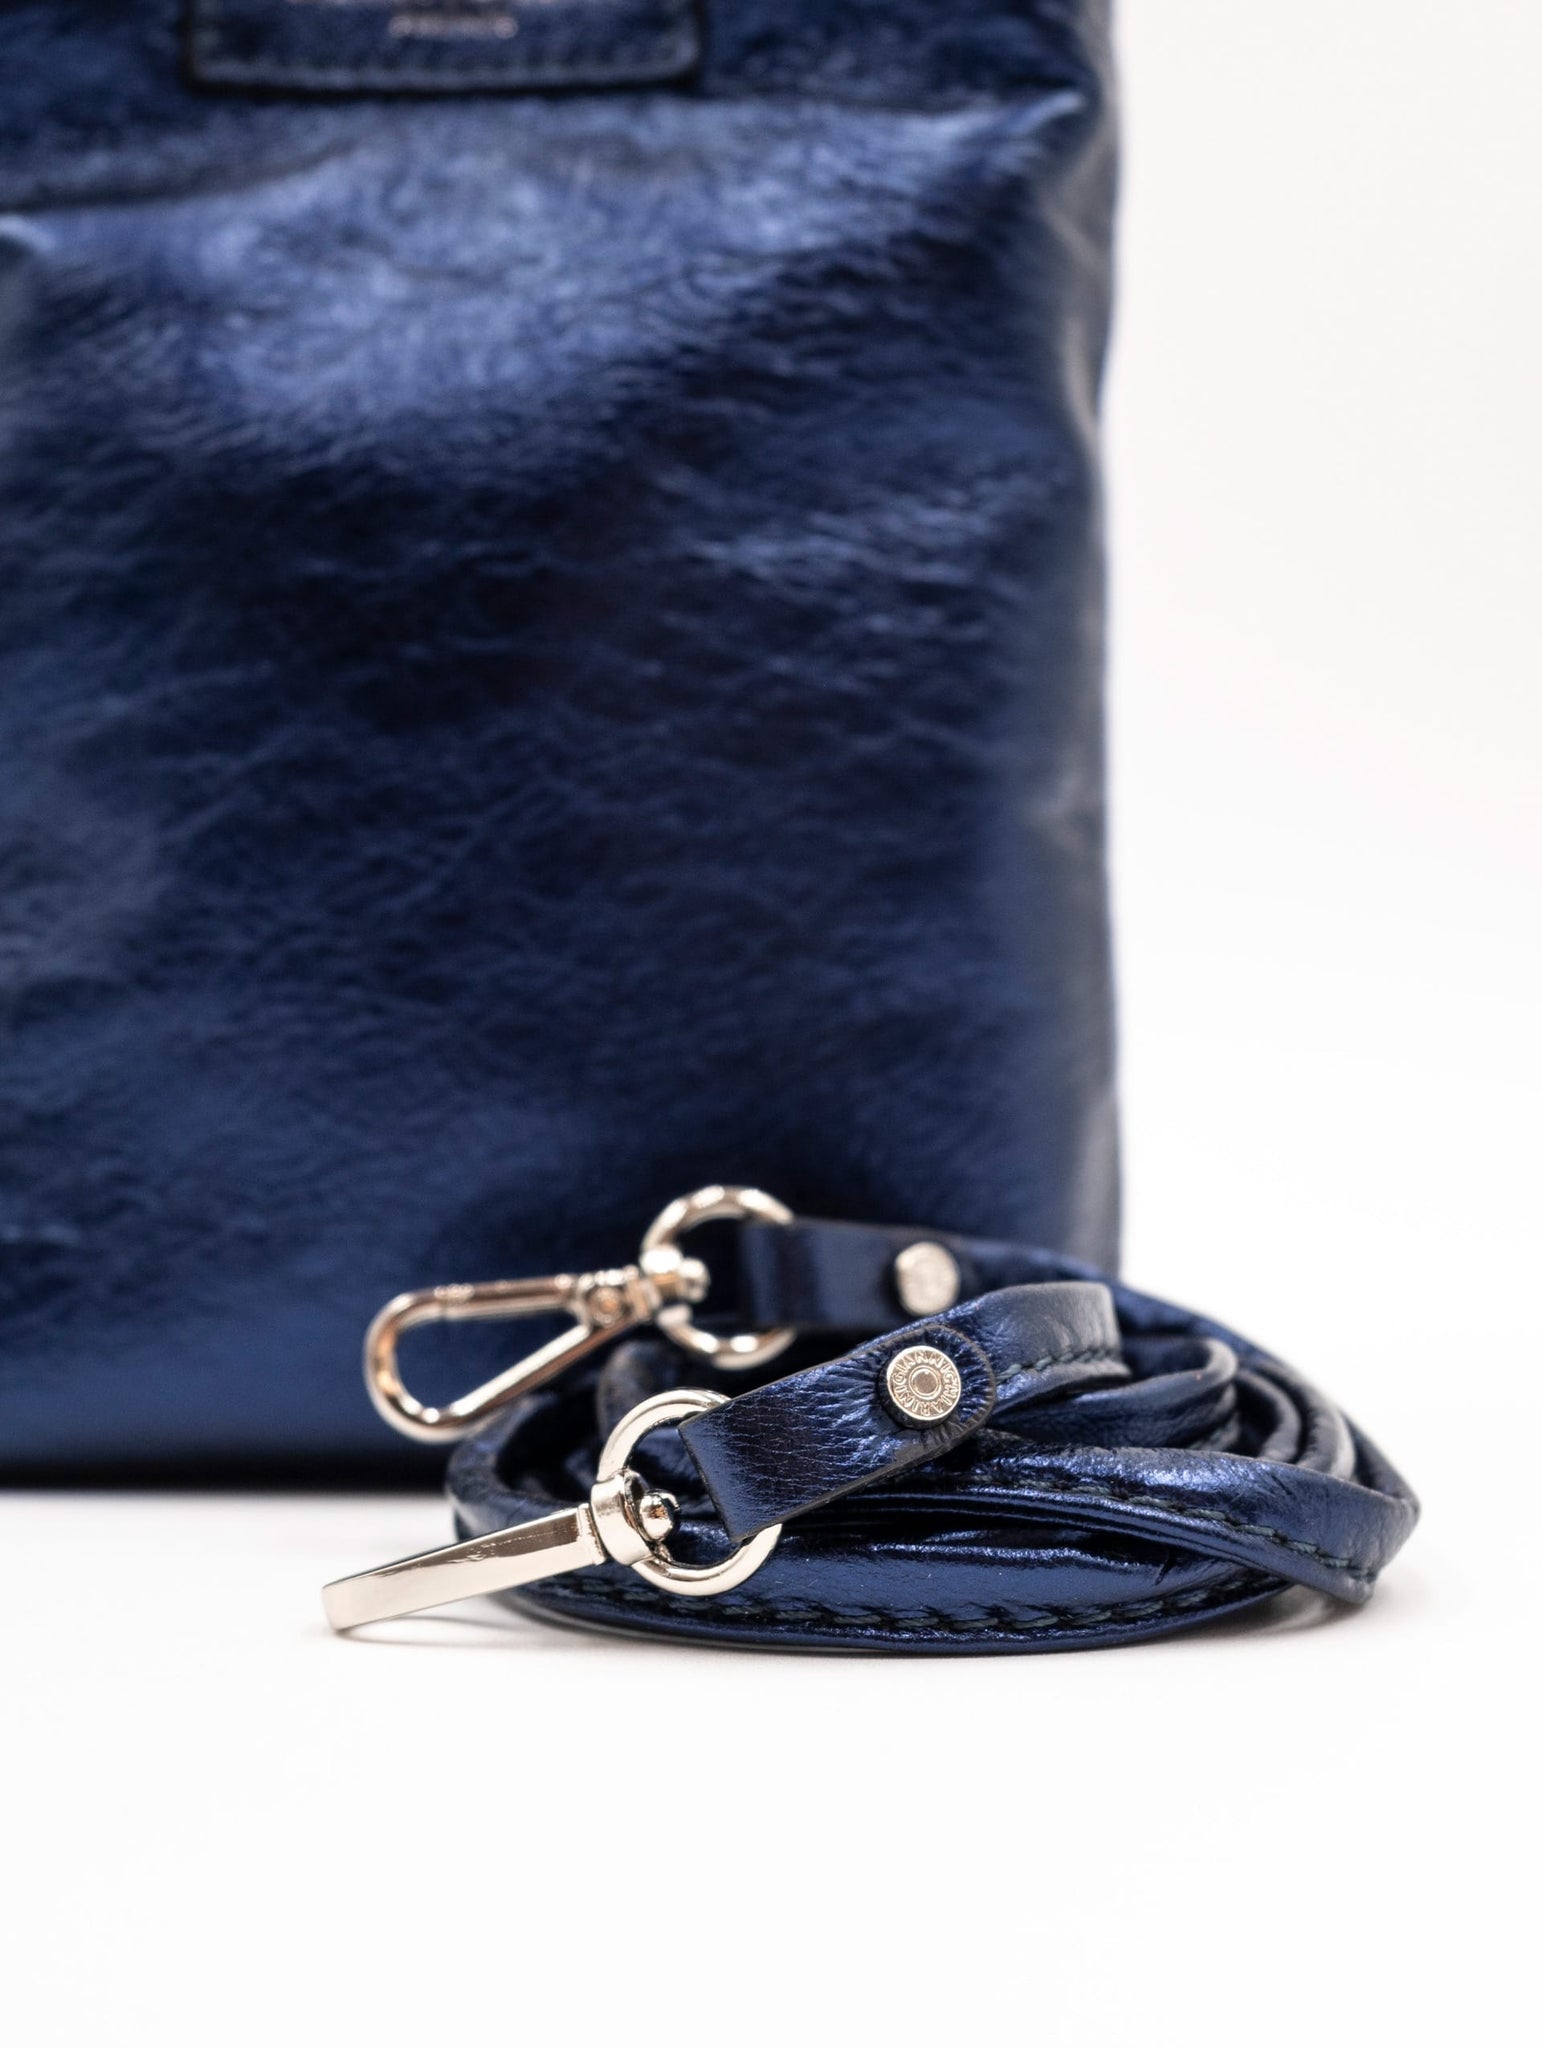 Minibag Camilla Gianni Chiarini in Pelle Martellata Blu